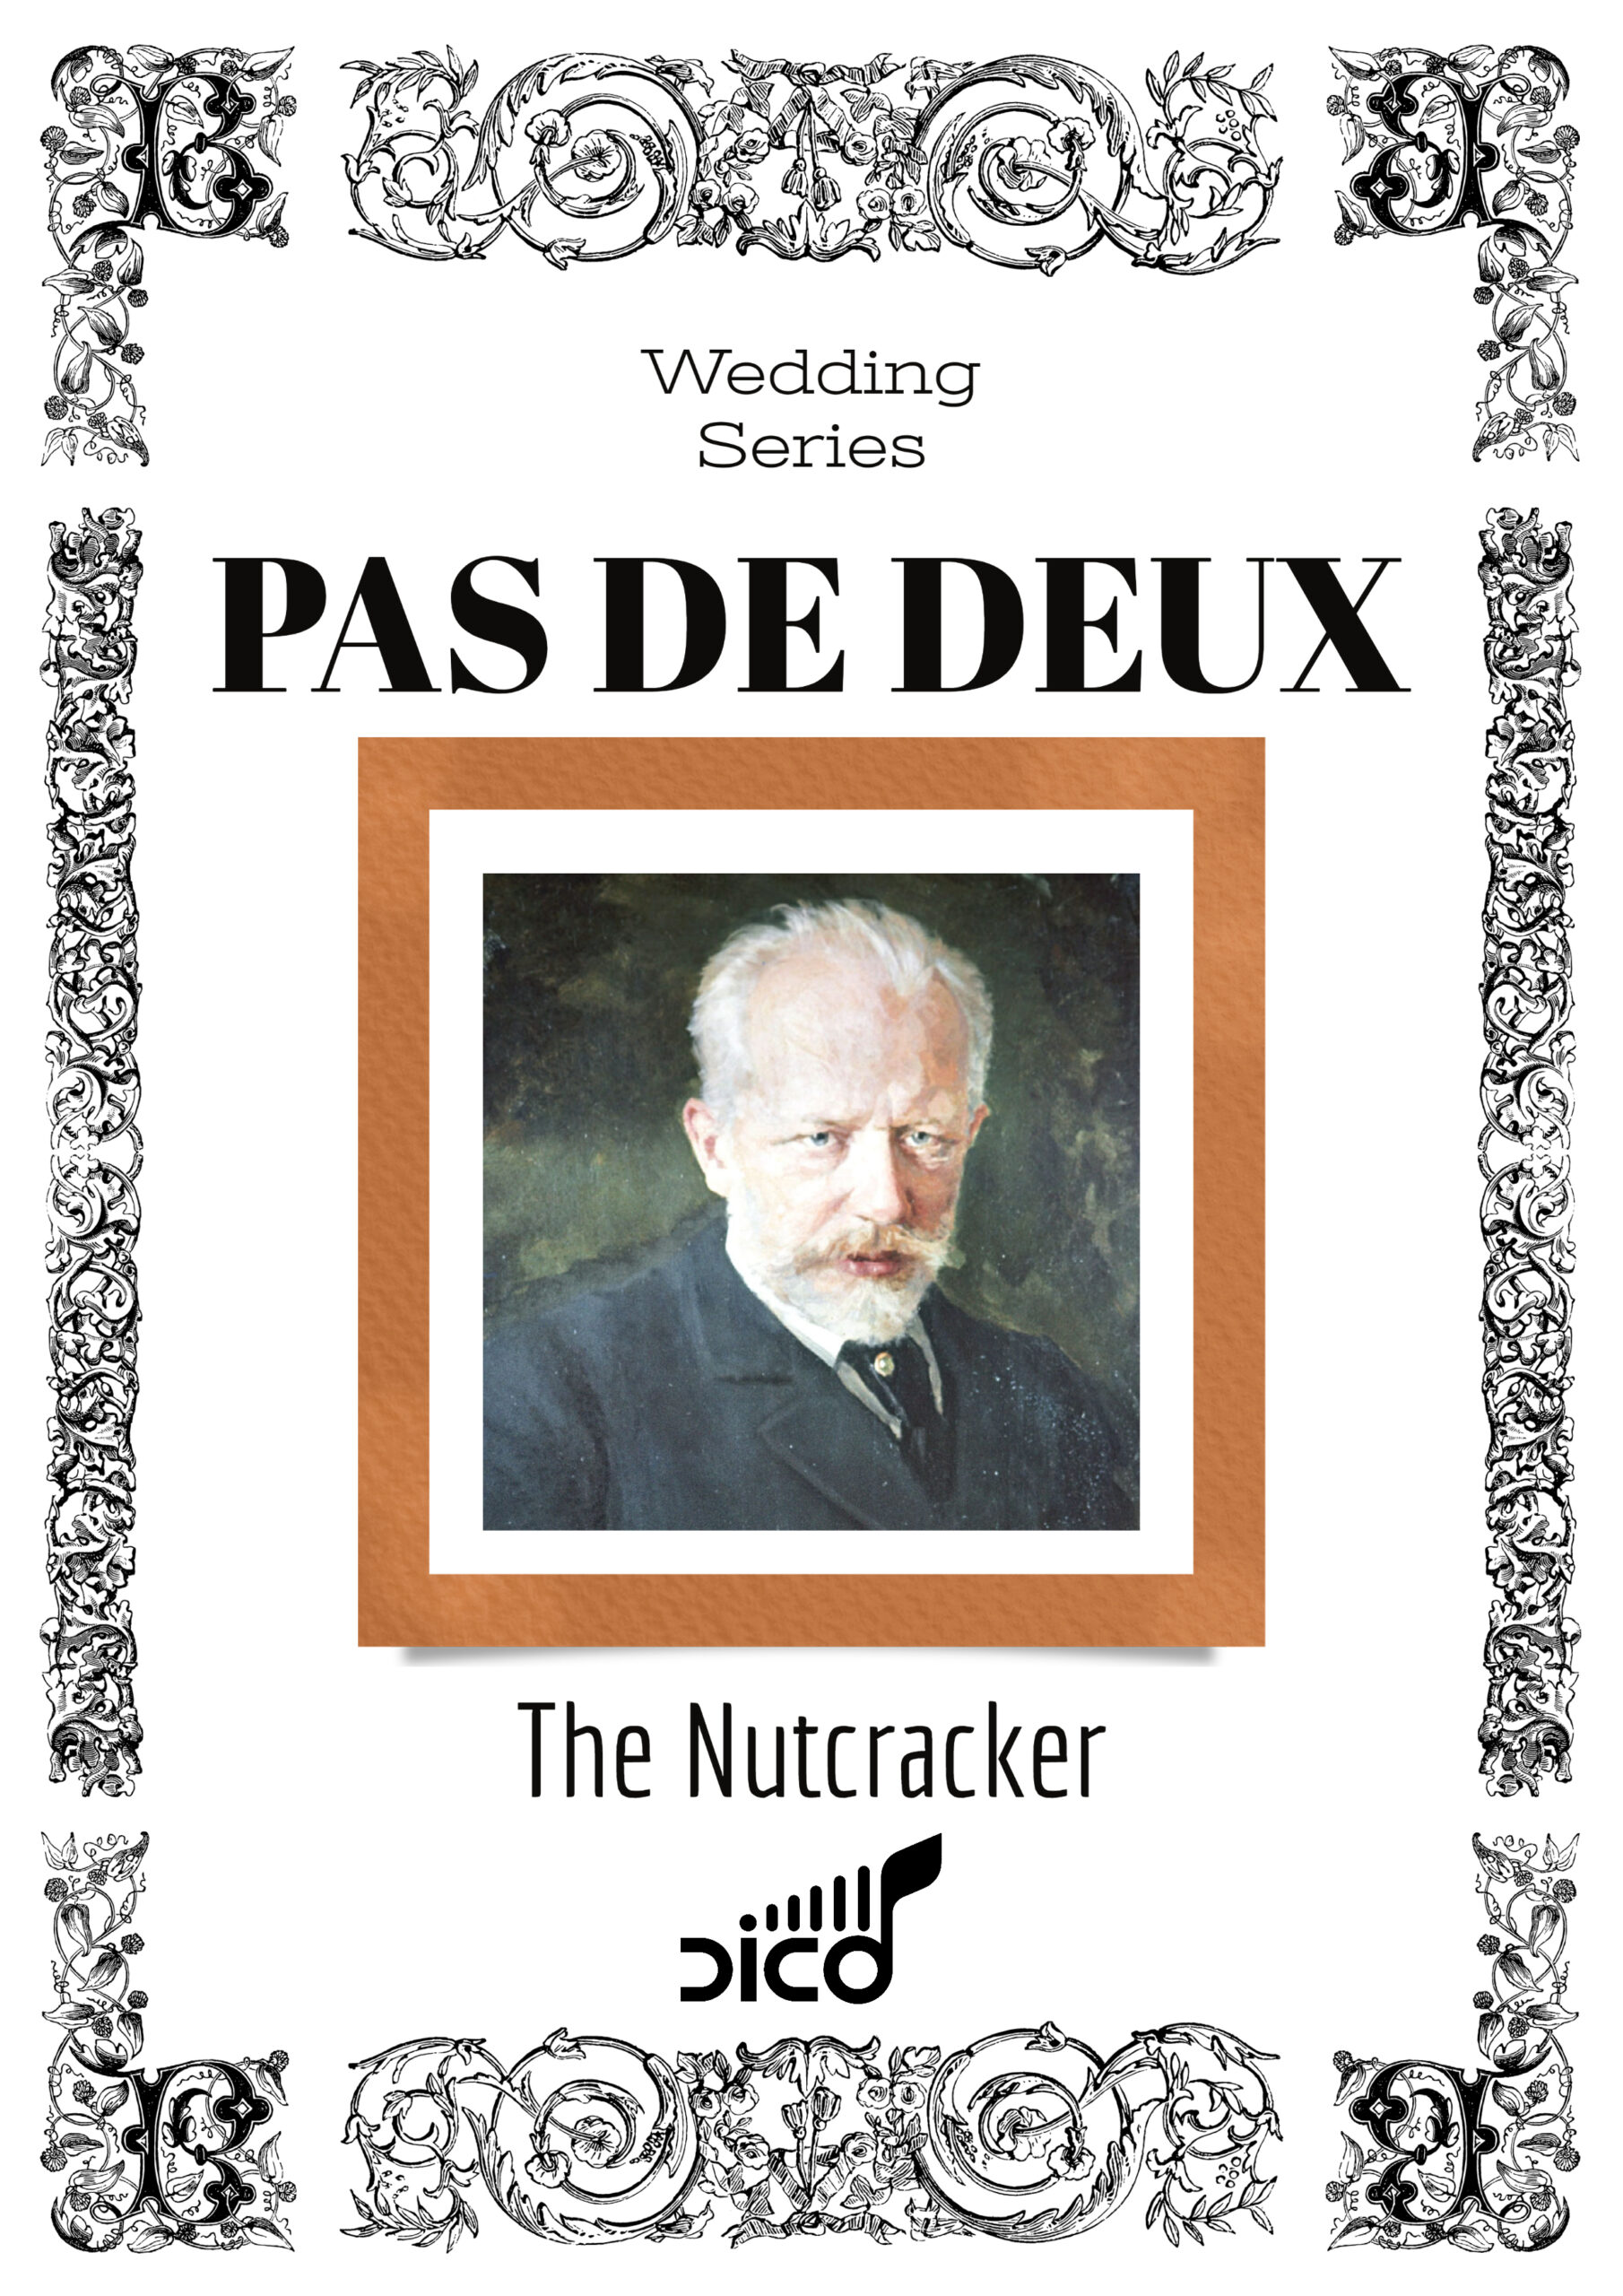 Wedding Series Pas de Deux The Nutcracker complete cover 1 scaled